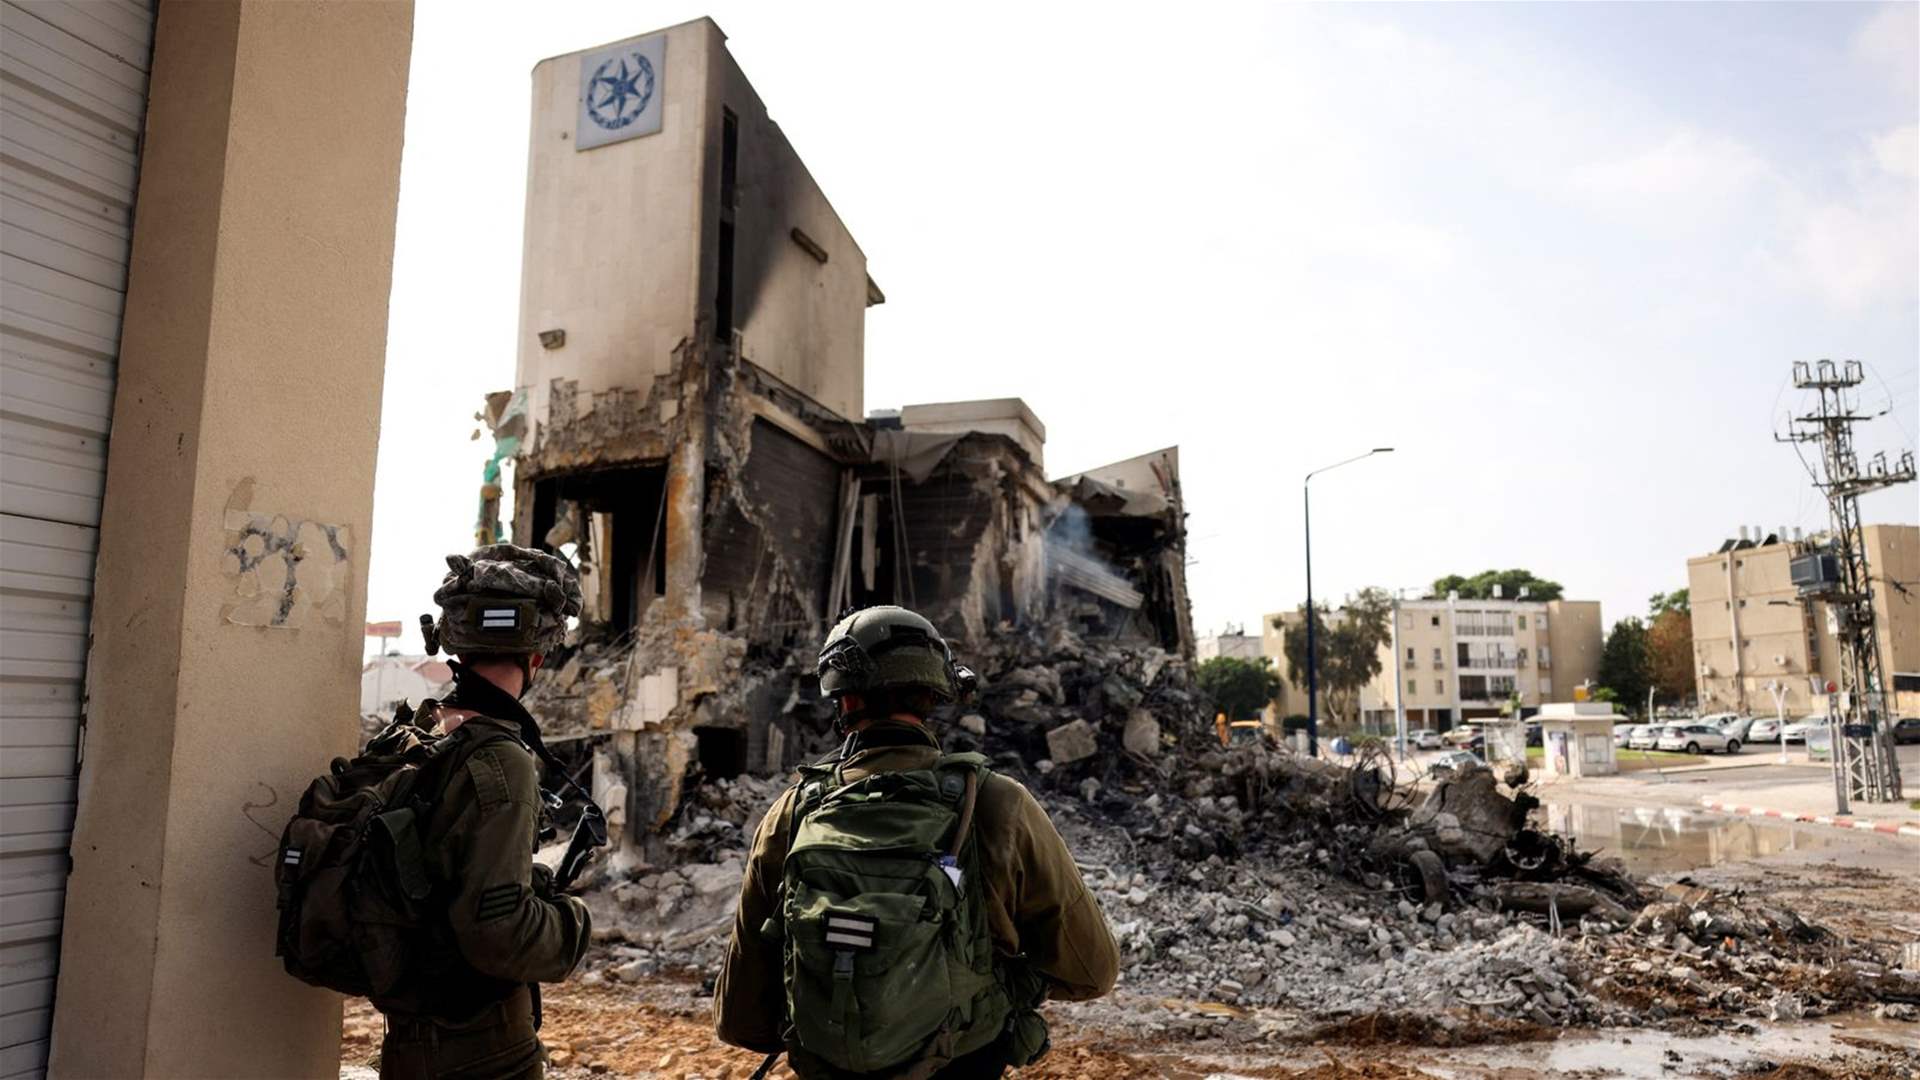 فرنسيون يغادرون للقتال مع إسرائيل في غزة